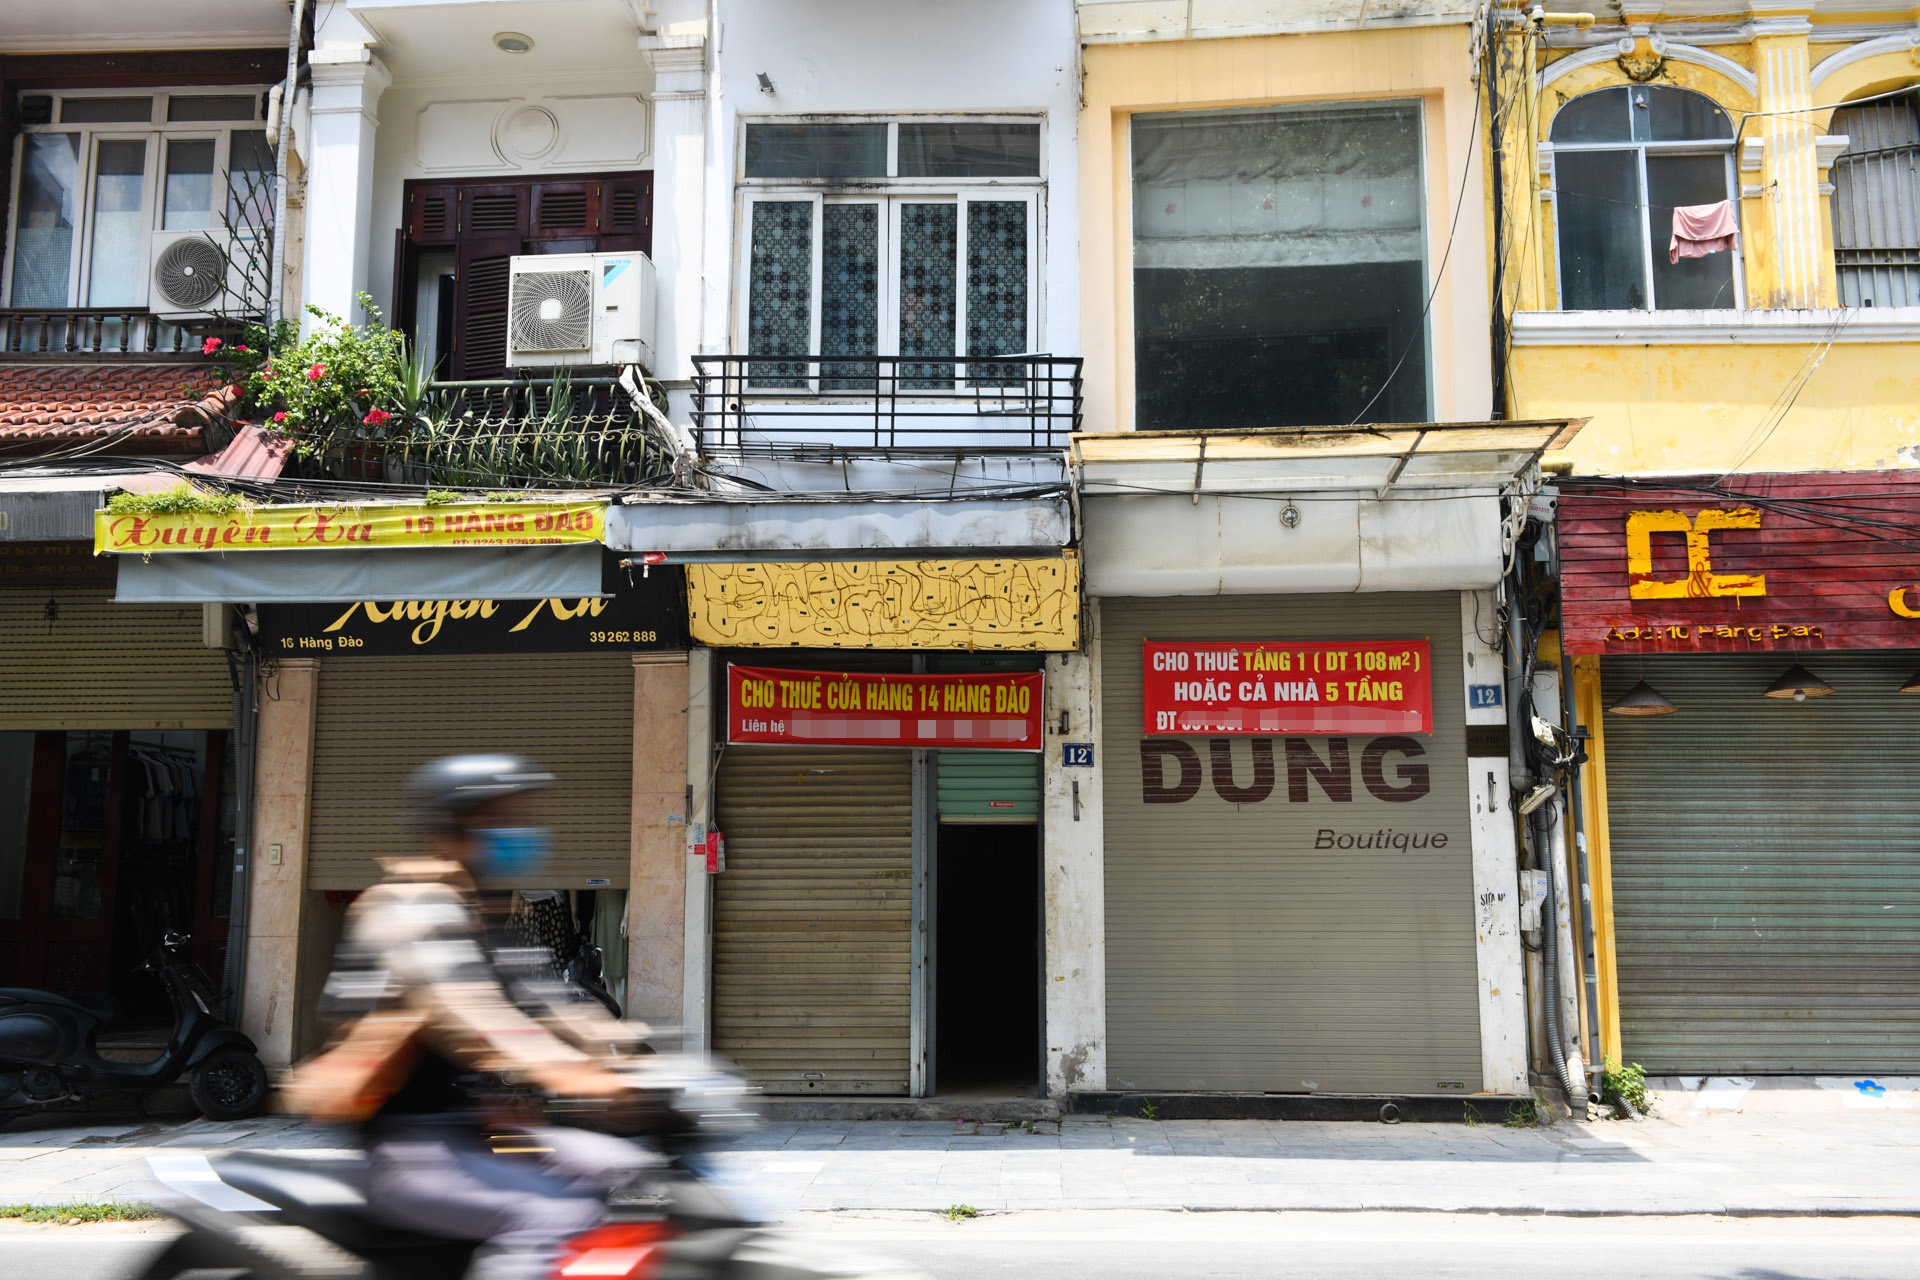 Hàng loạt nhà phố cổ Hà Nội treo biển cho thuê, bán nhà - Ảnh 3.